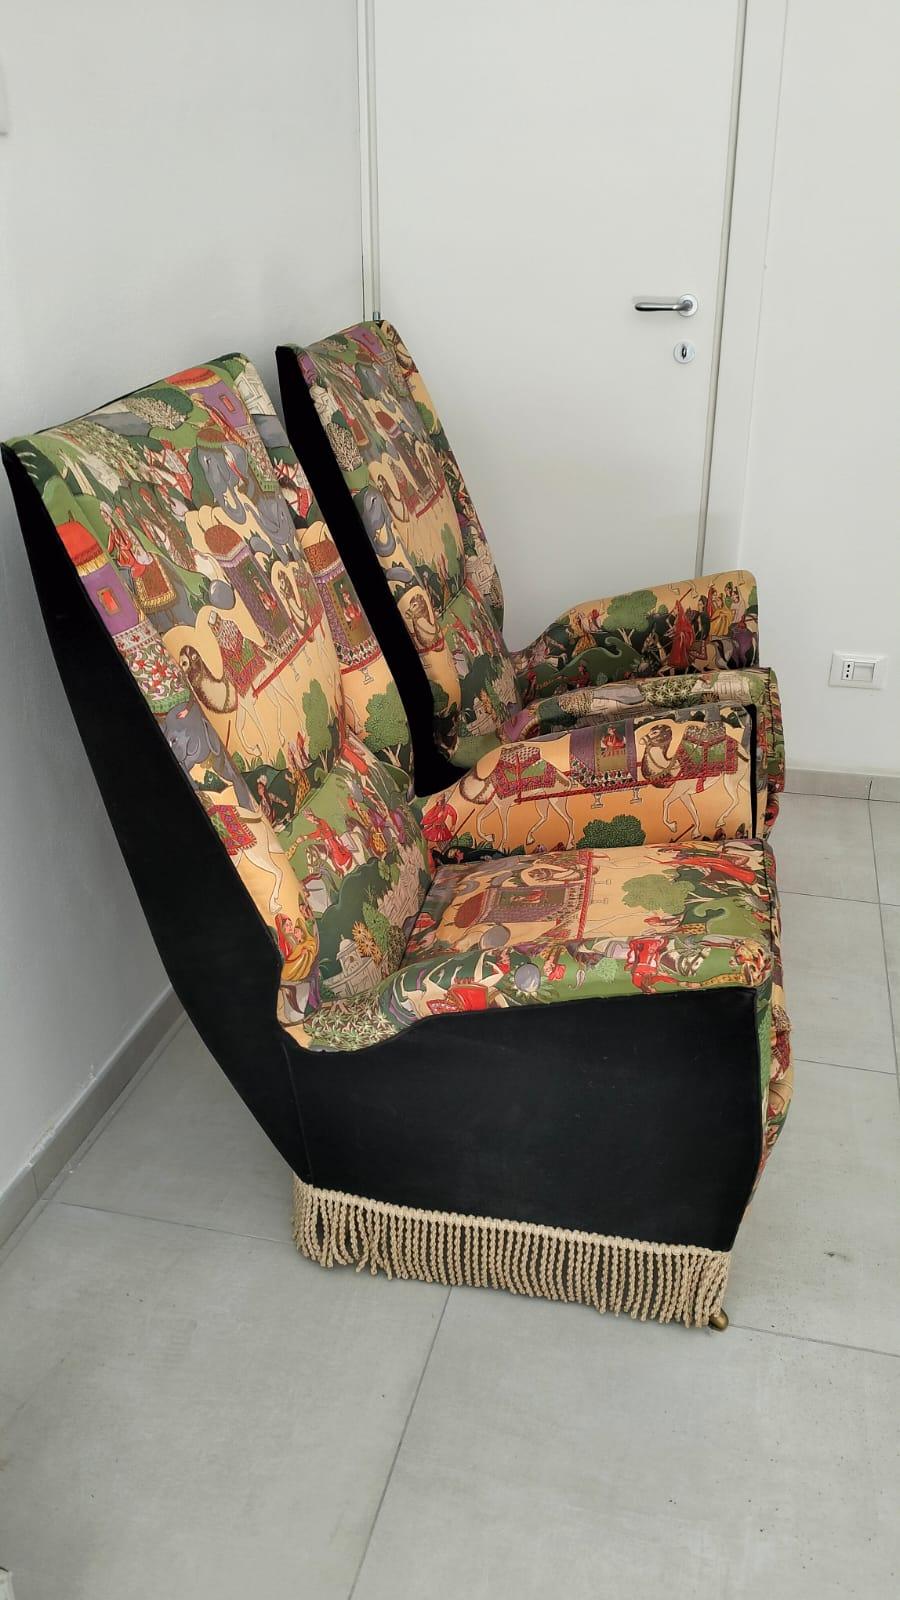 Gio Ponti Paire de fauteuils ISA Bergamo Italie 1950 Moderne du milieu du siècle .
Tissu Cintsz à motifs, mouchoir, jarrets de laiton ondulés.
Première série d'origine, un seul propriétaire, parfait.
Cette paire de fauteuils de Gio Ponti est